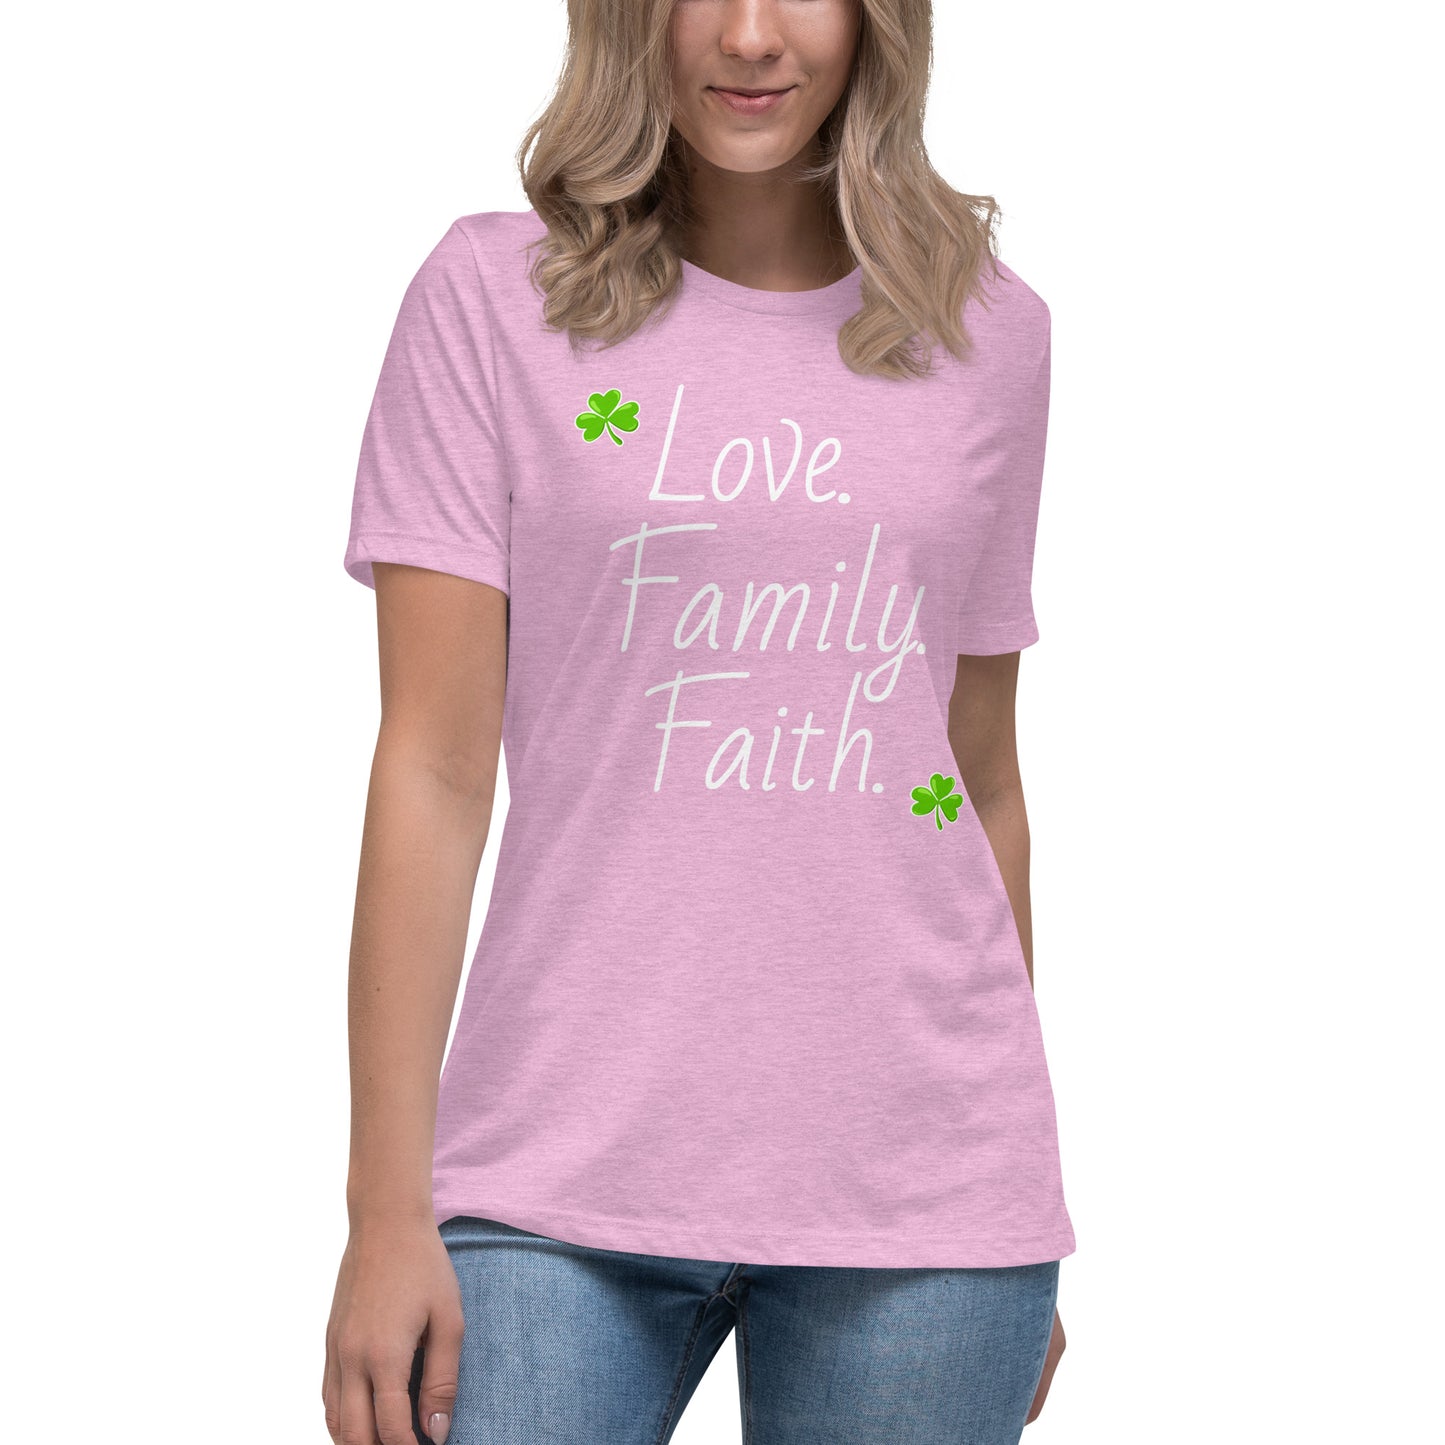 Love Family Faith Women's tee (white lettering)